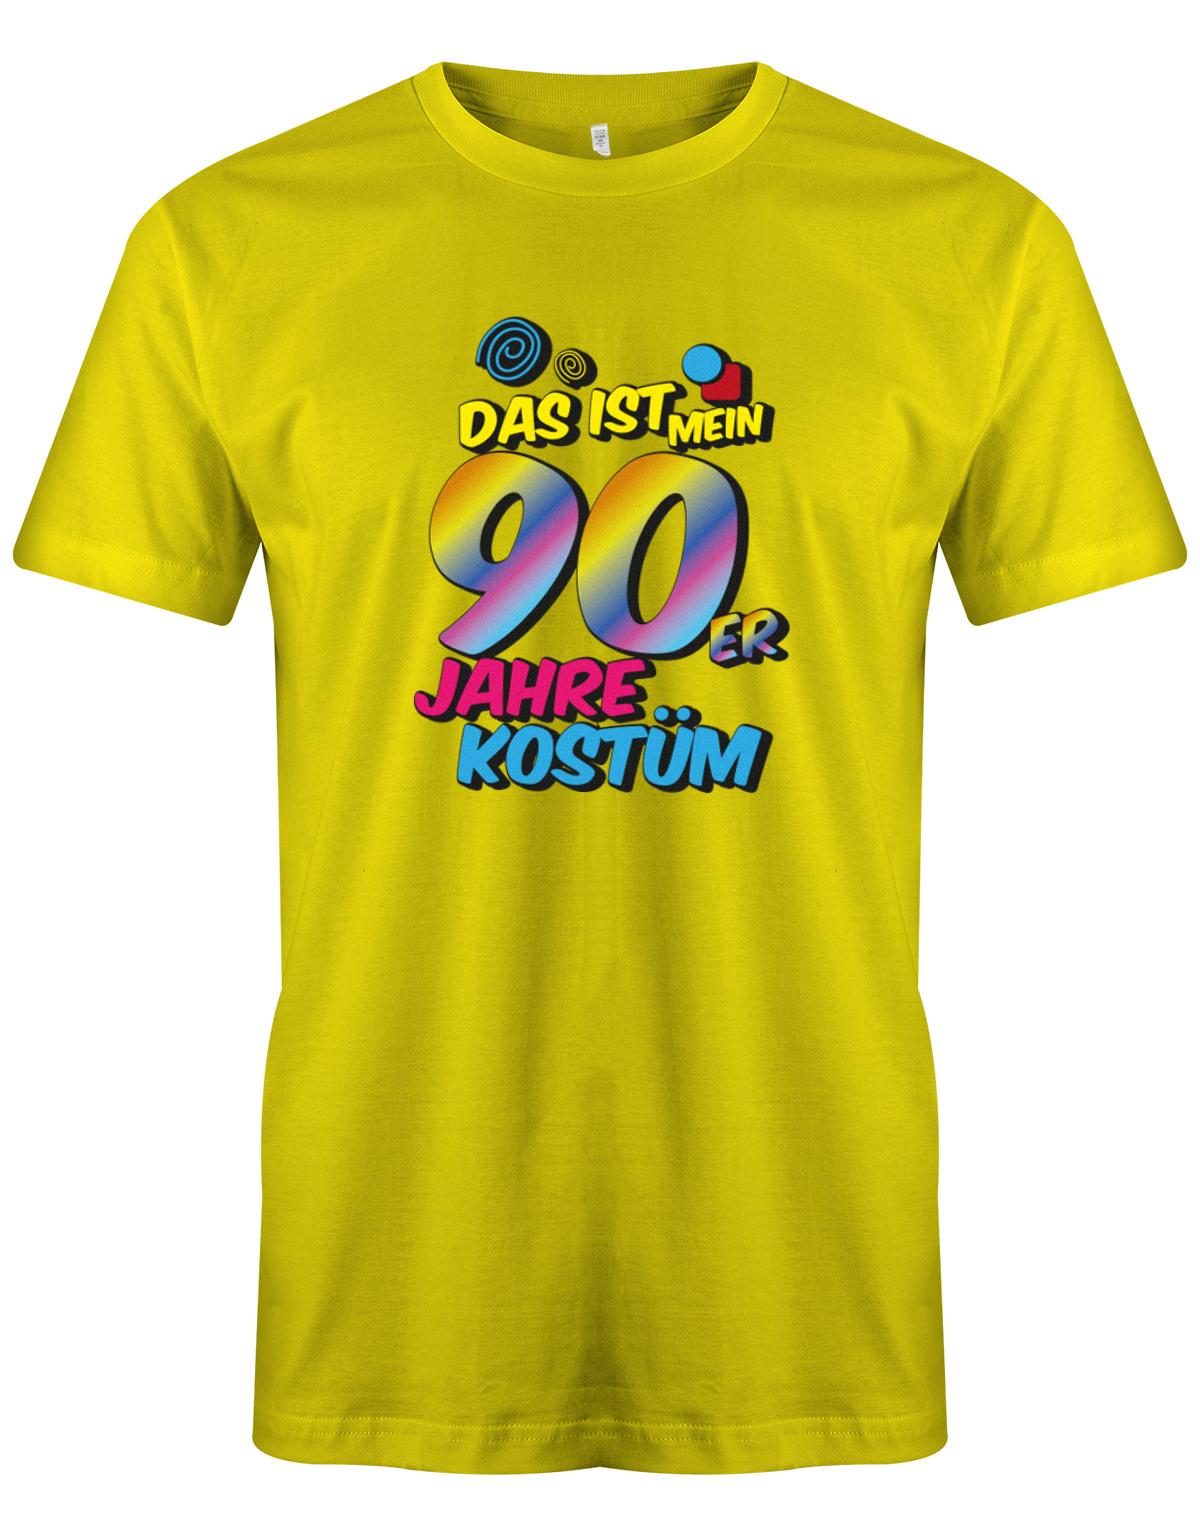 Das-ist-mein-90er-Jahre-Kost-m-Fasching-Karneval-Verkleidung-Shirt-Herren-Gelb